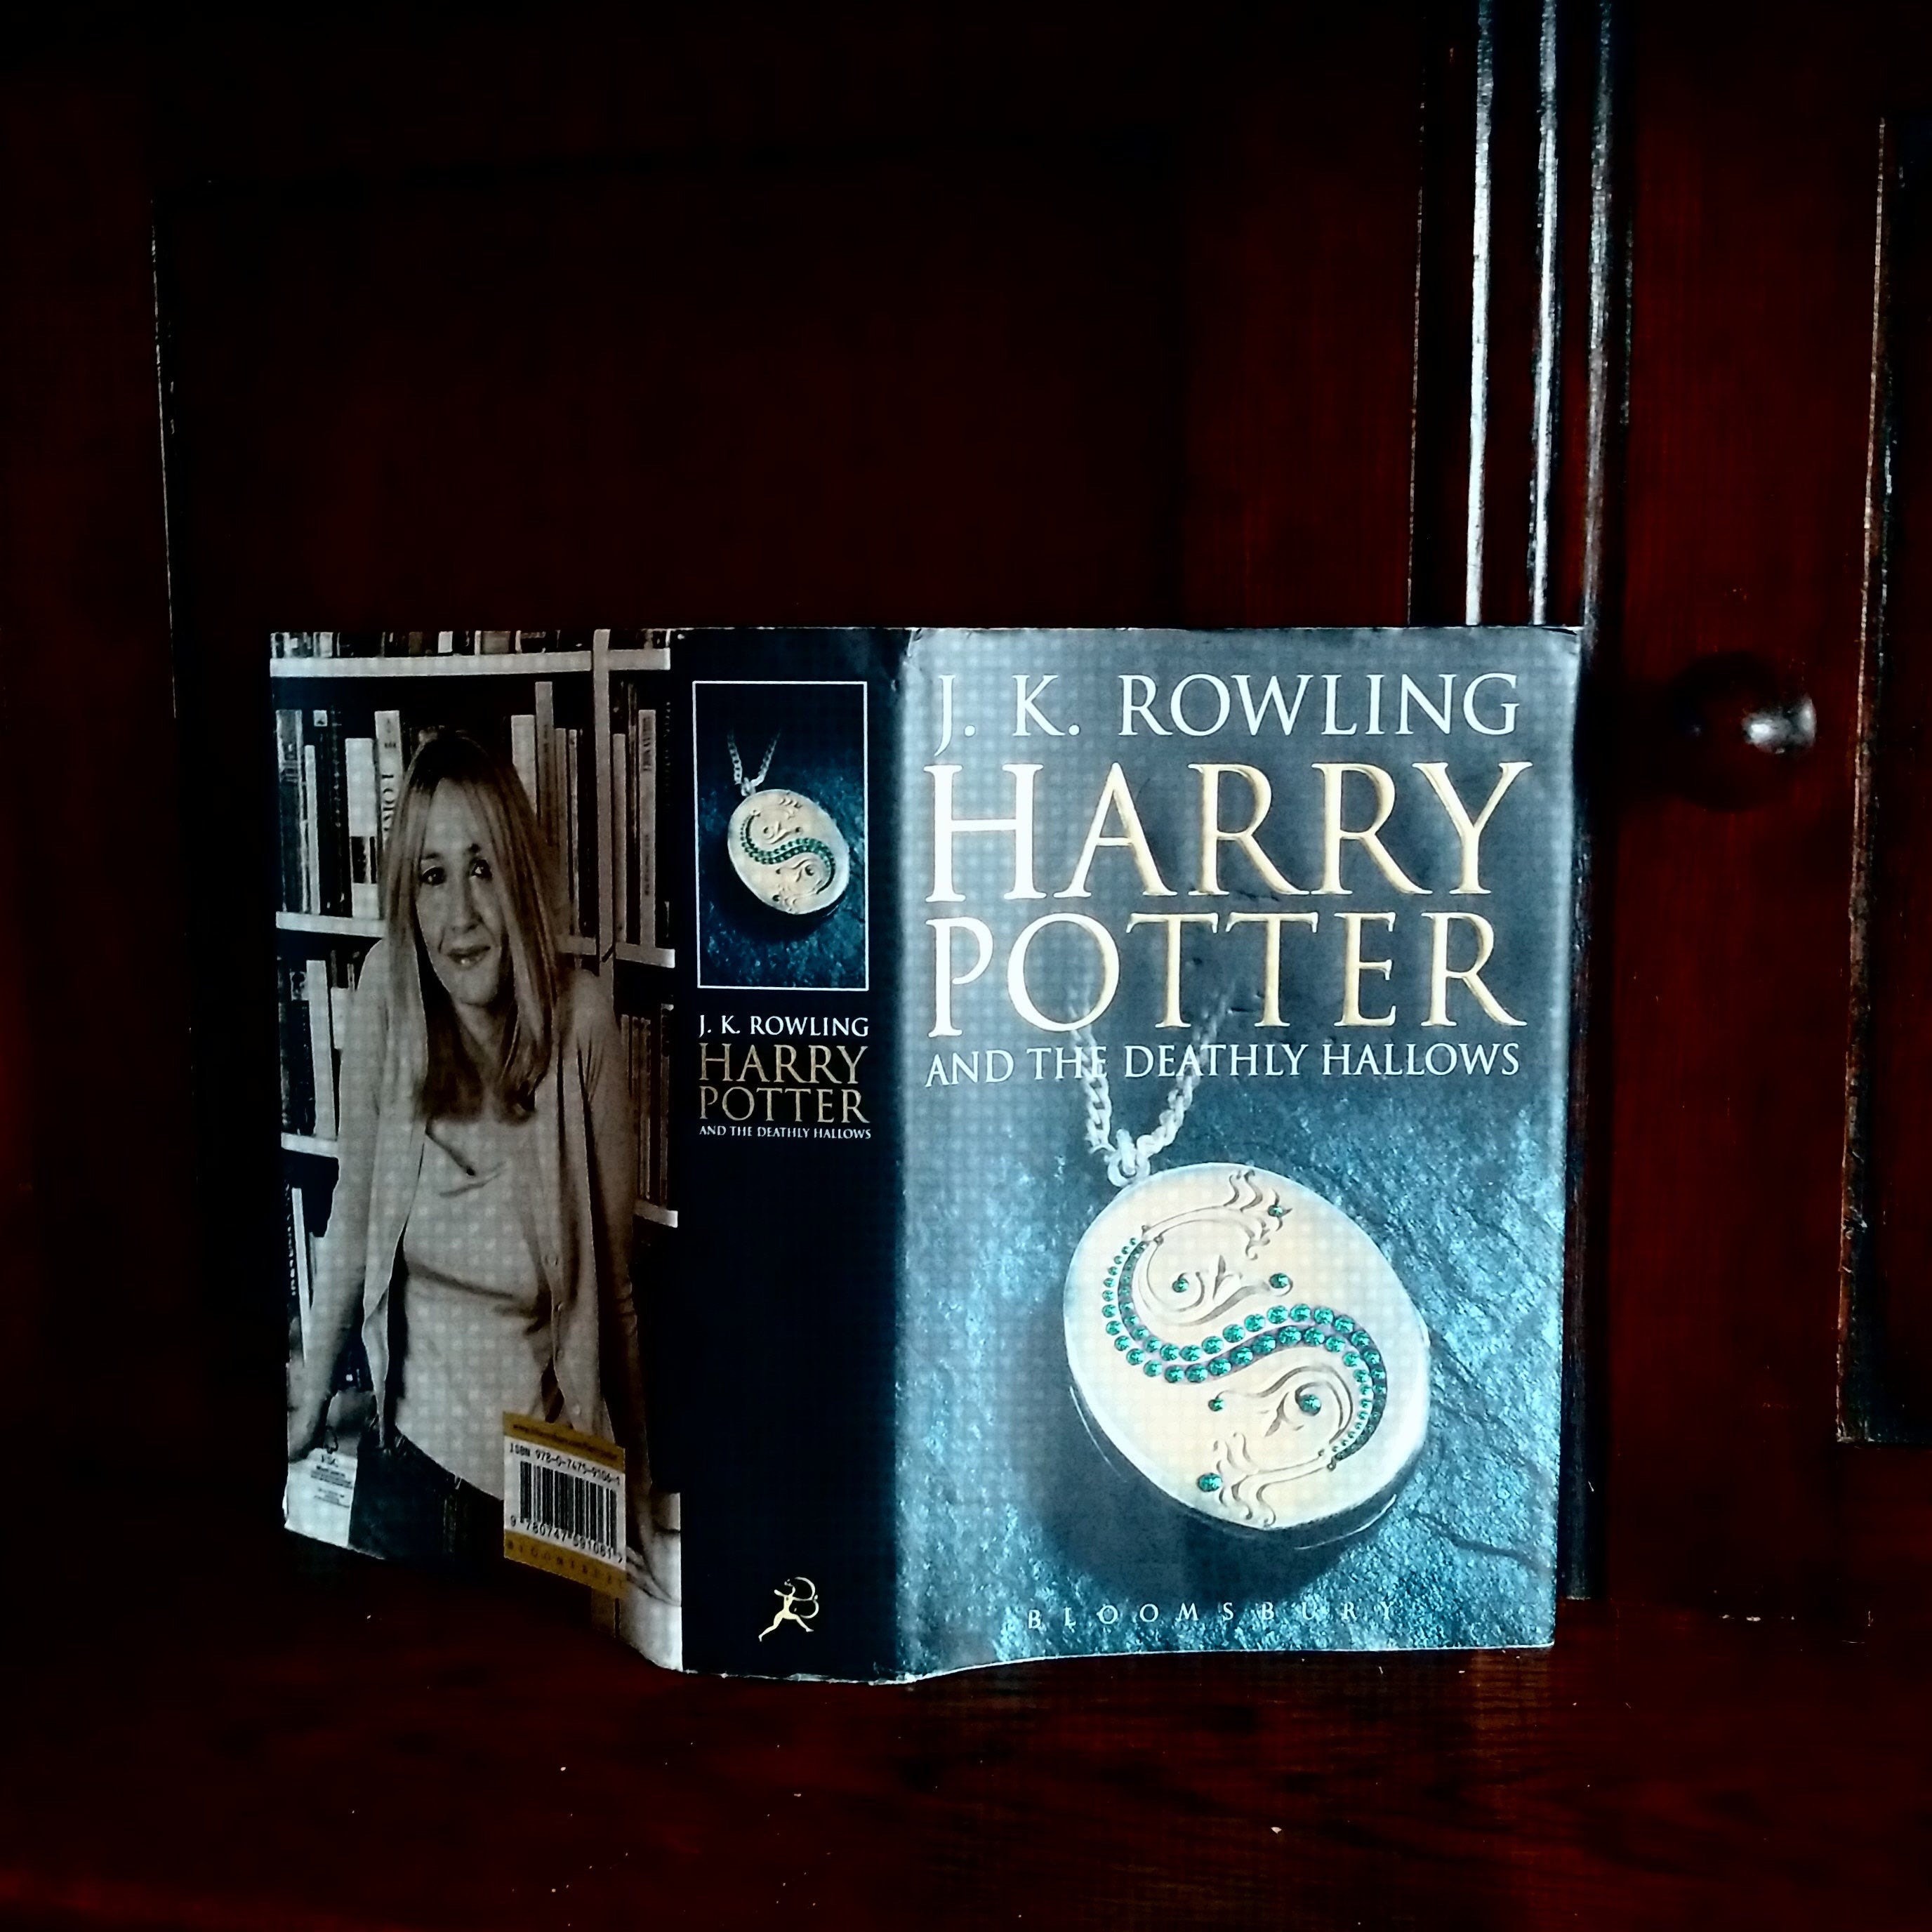 Juego de libros de Harry Potter 1 a 7 en baúl de juguete tipo cofre,  coleccionable, con adhesivos decorativos incluidos por Harry Potter